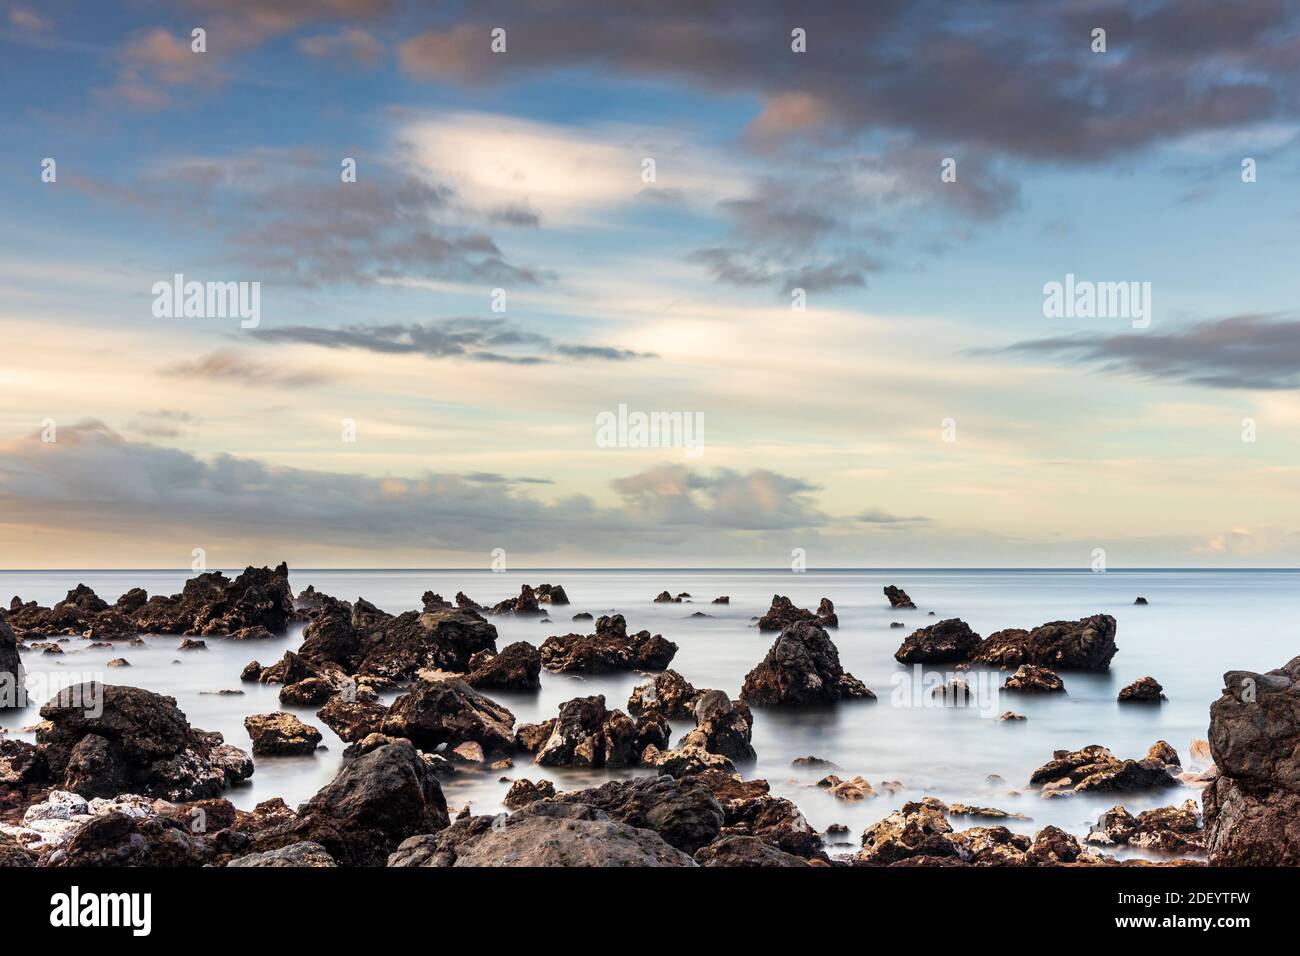 Lunga esposizione al mare all'alba con rocce a Playa san Juan, Tenerife, Isole Canarie, Spagna. Foto Stock